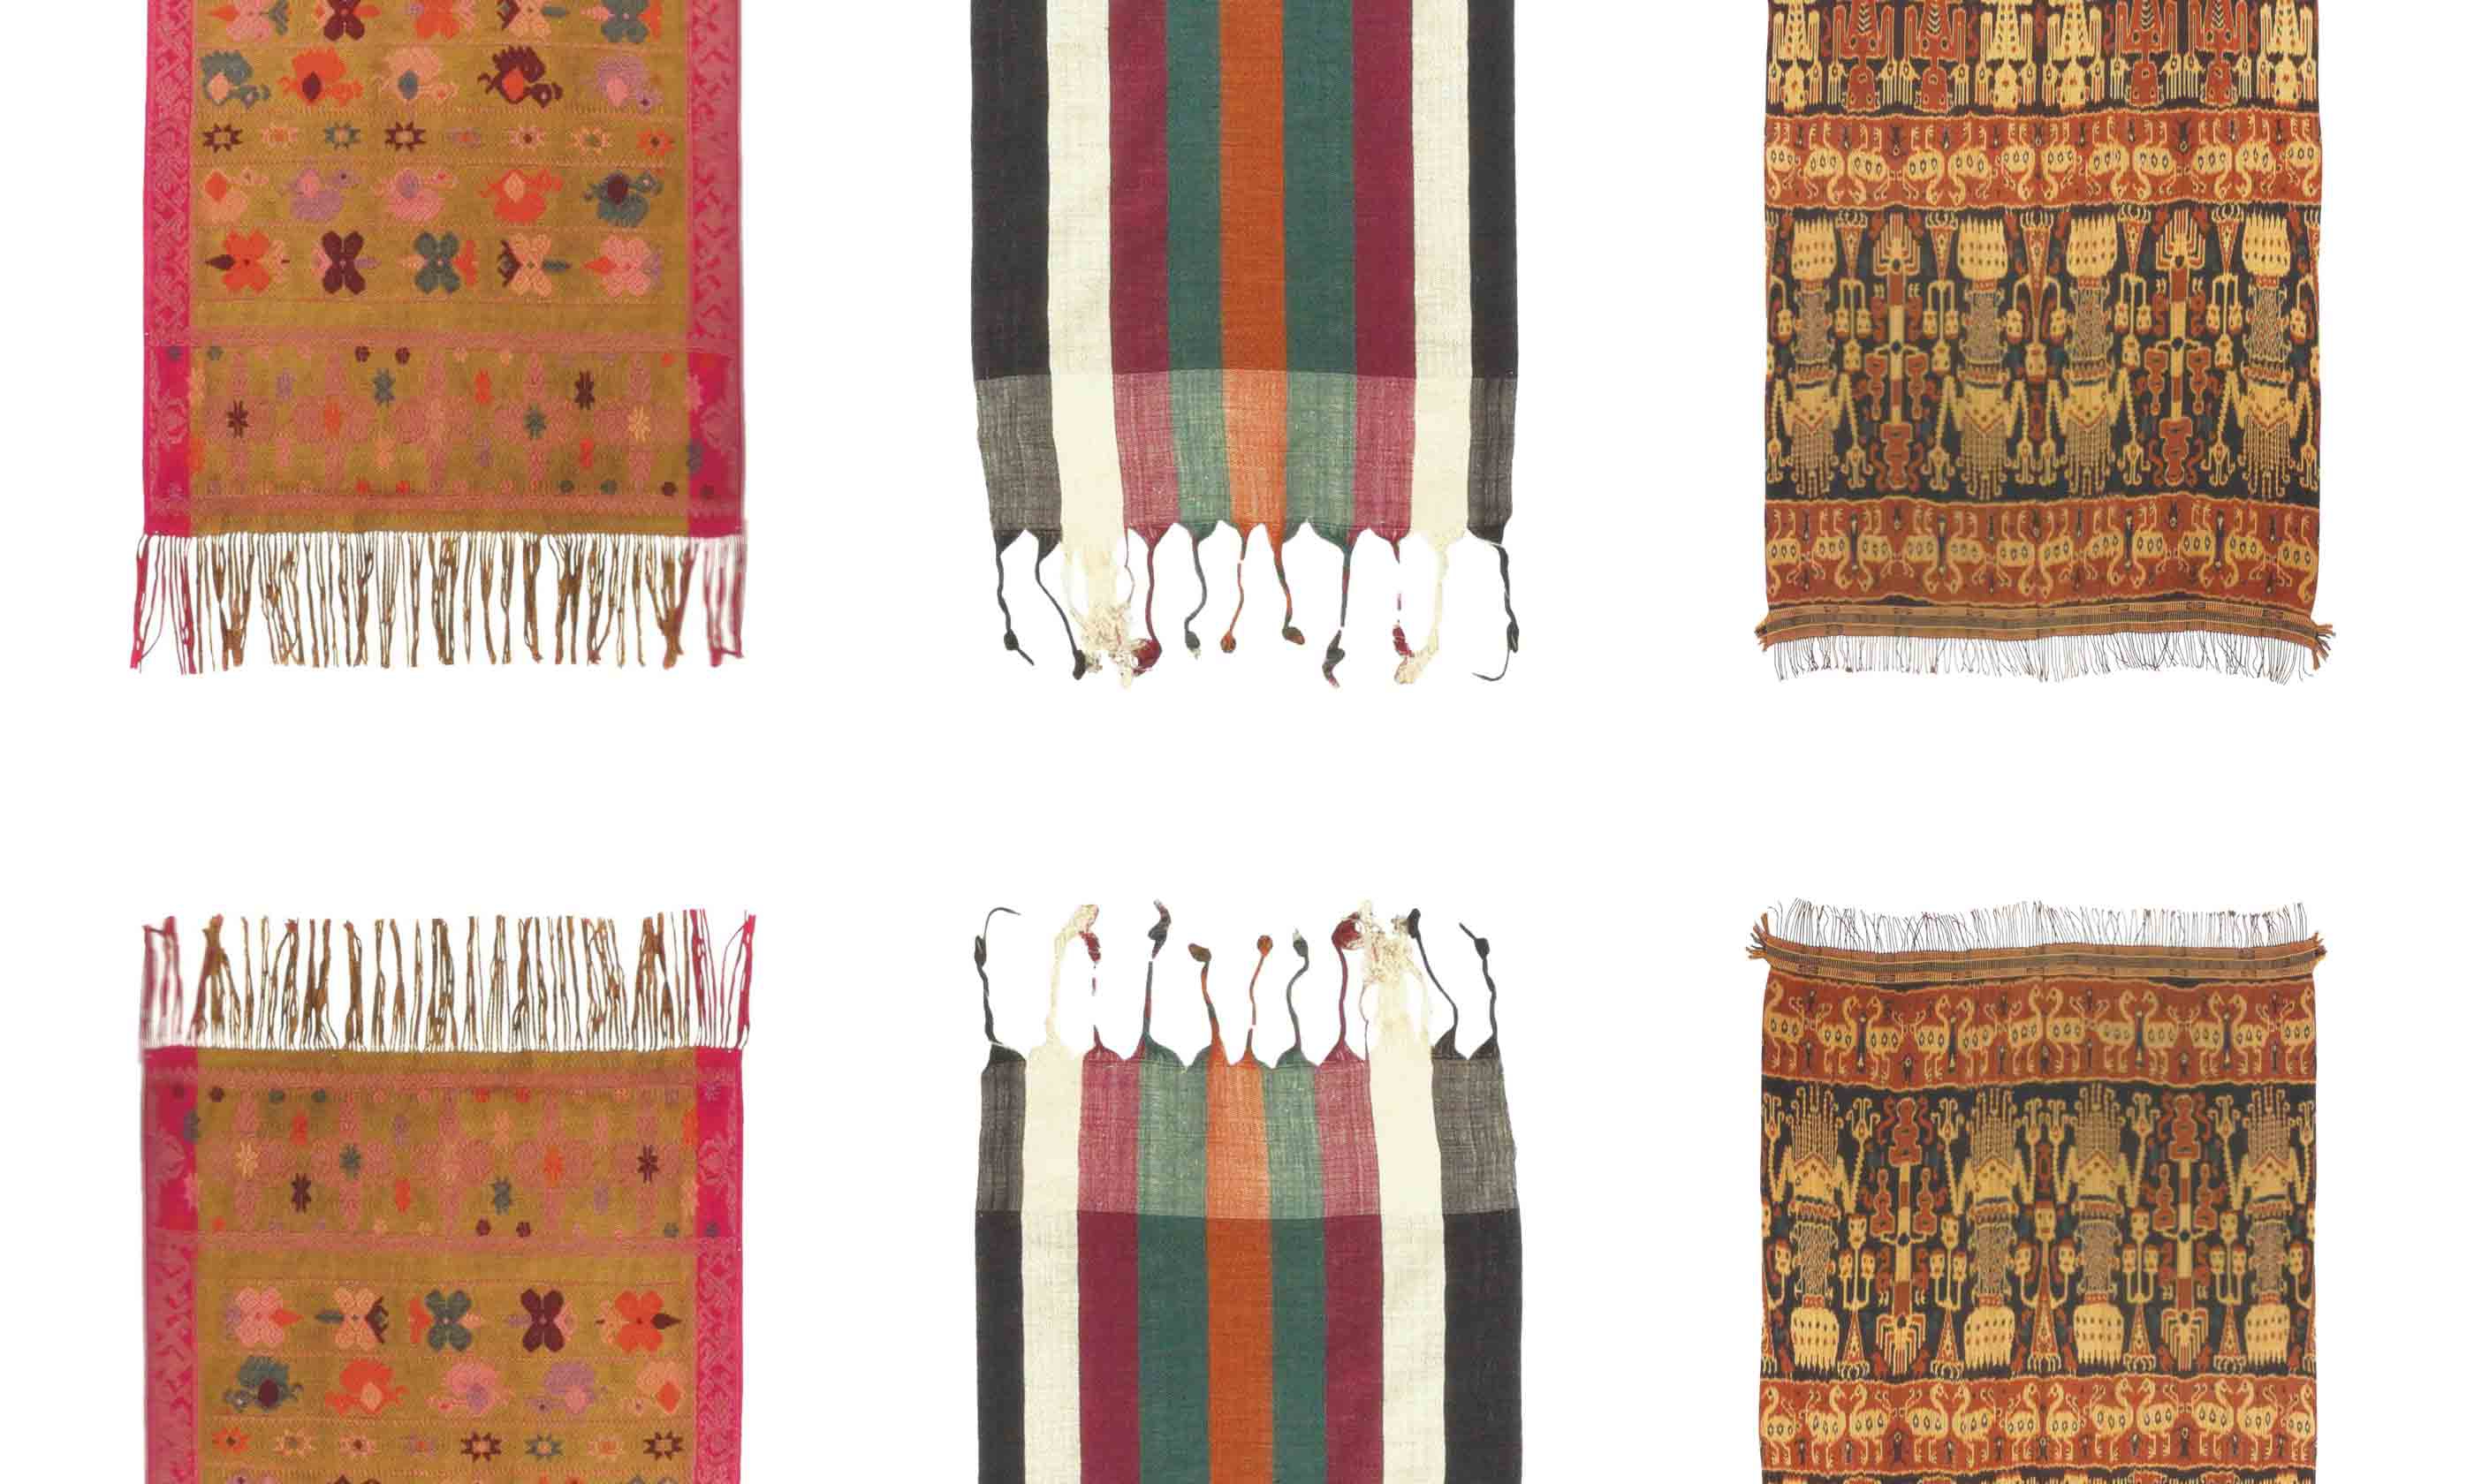 Kain kain adat di indonesia banyak dibuat dengan cara